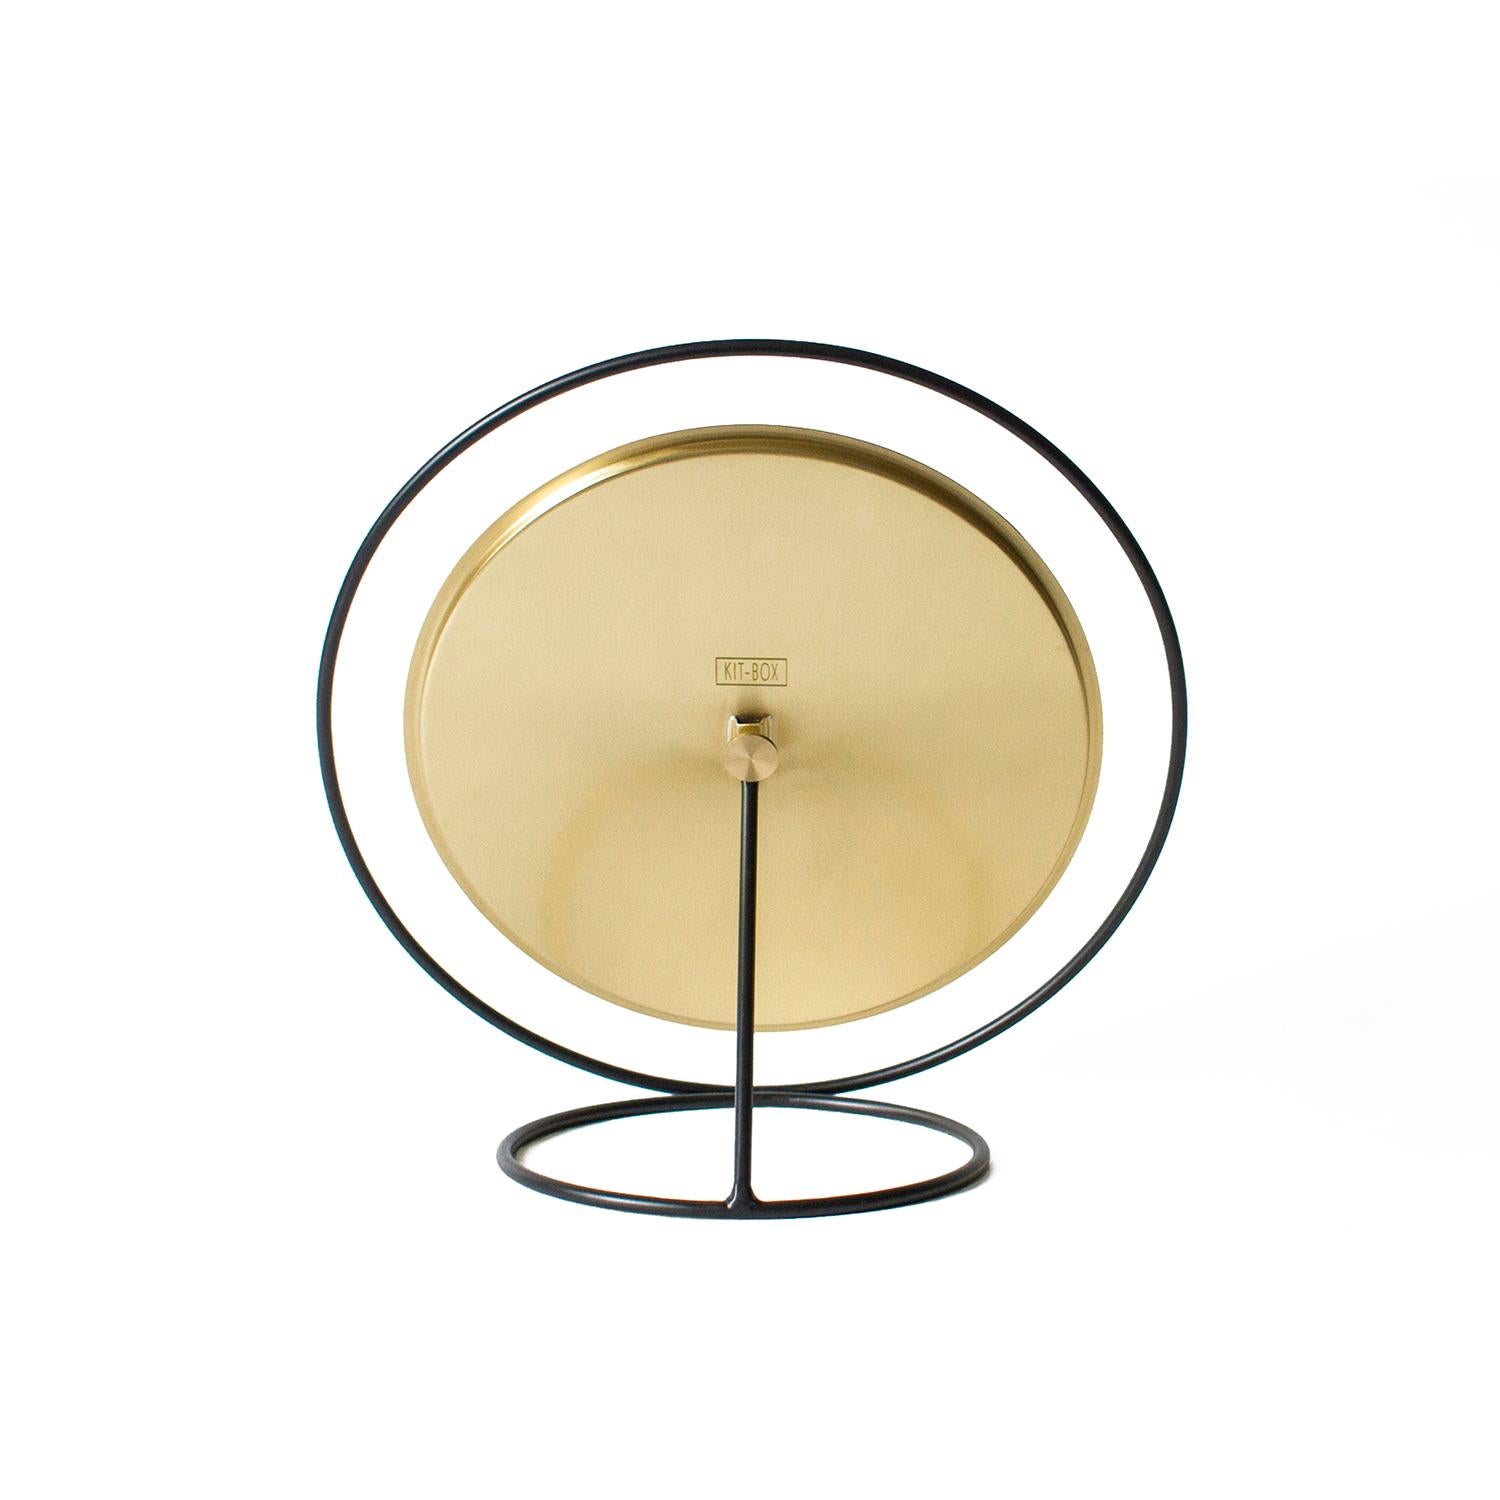 Turkish Hollow Mirror, Big, Brass